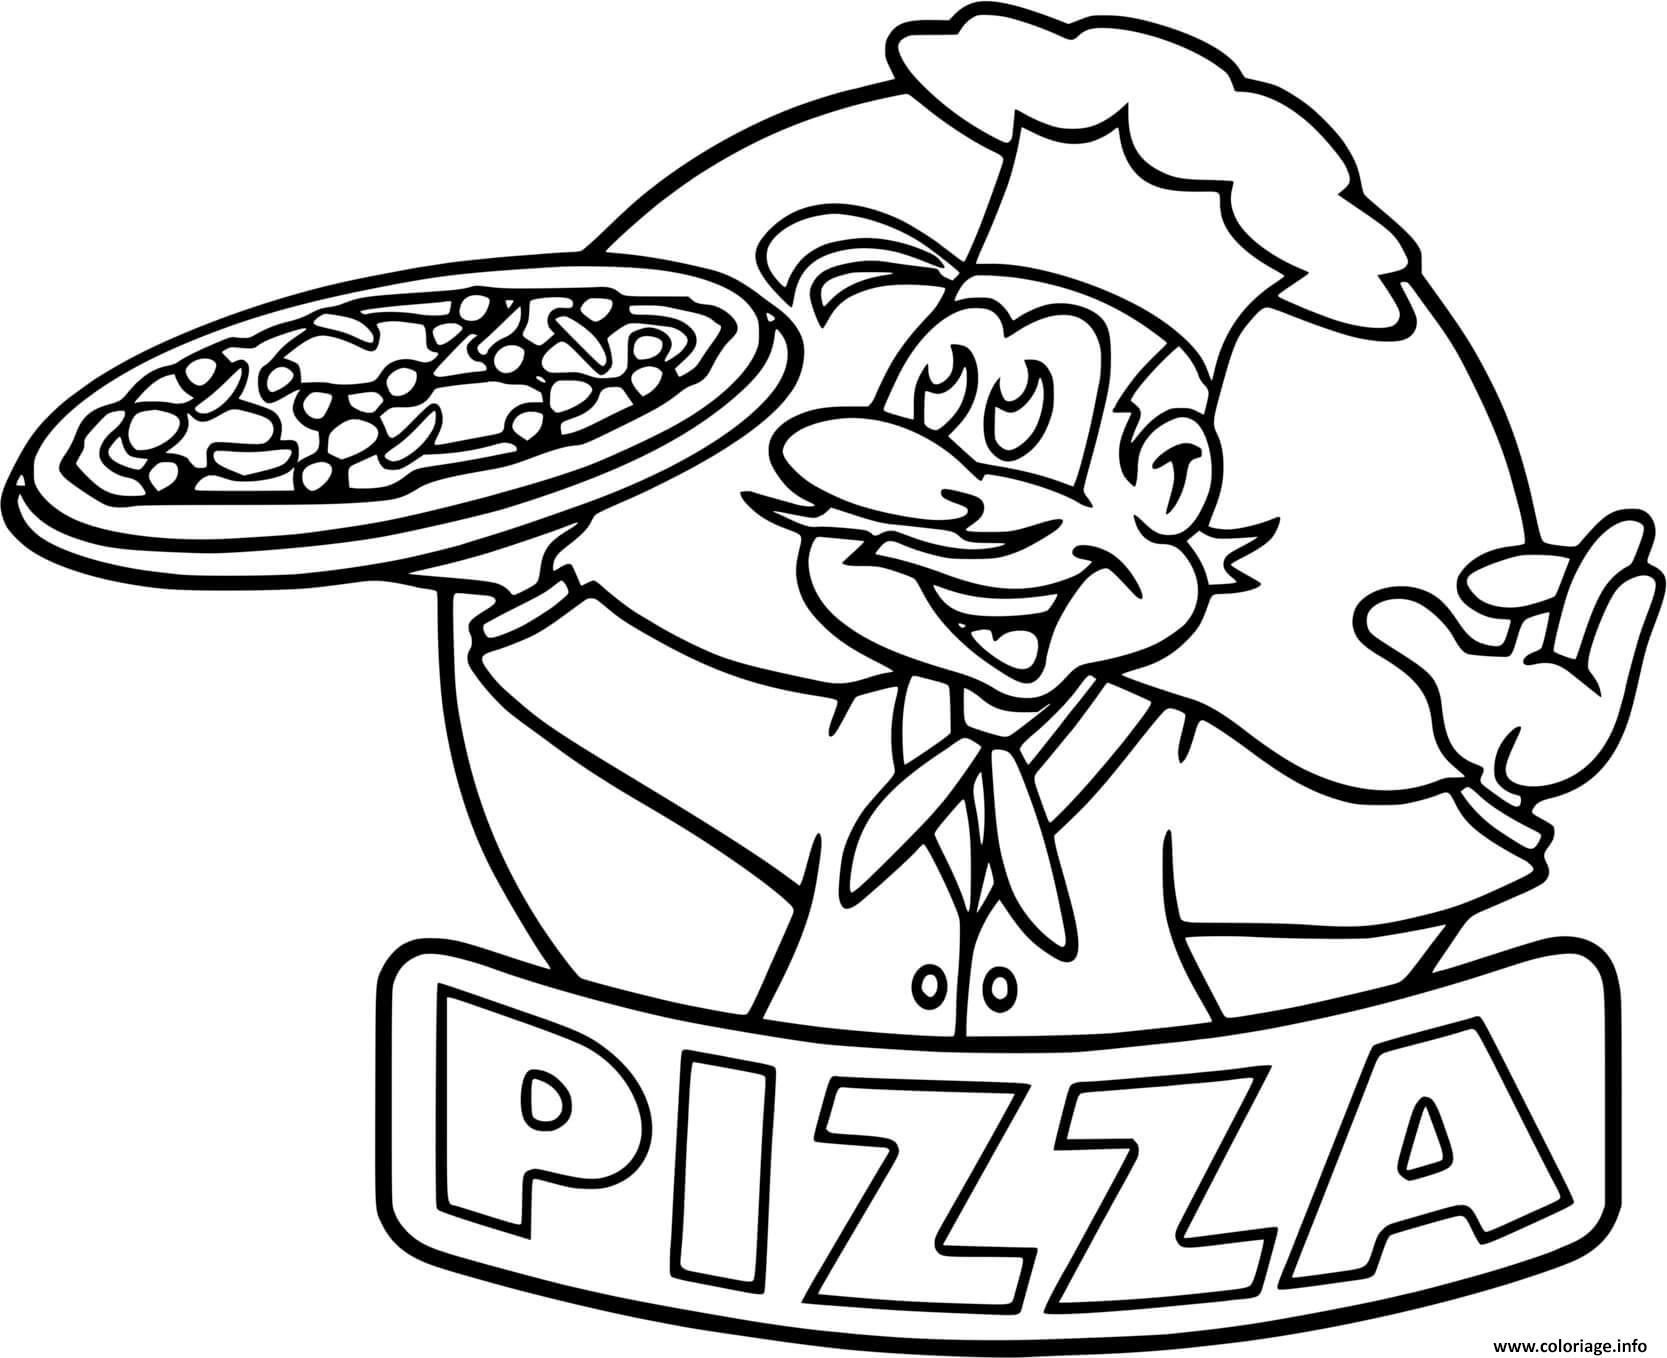 Dessin logo pizza chef restaurant Coloriage Gratuit à Imprimer